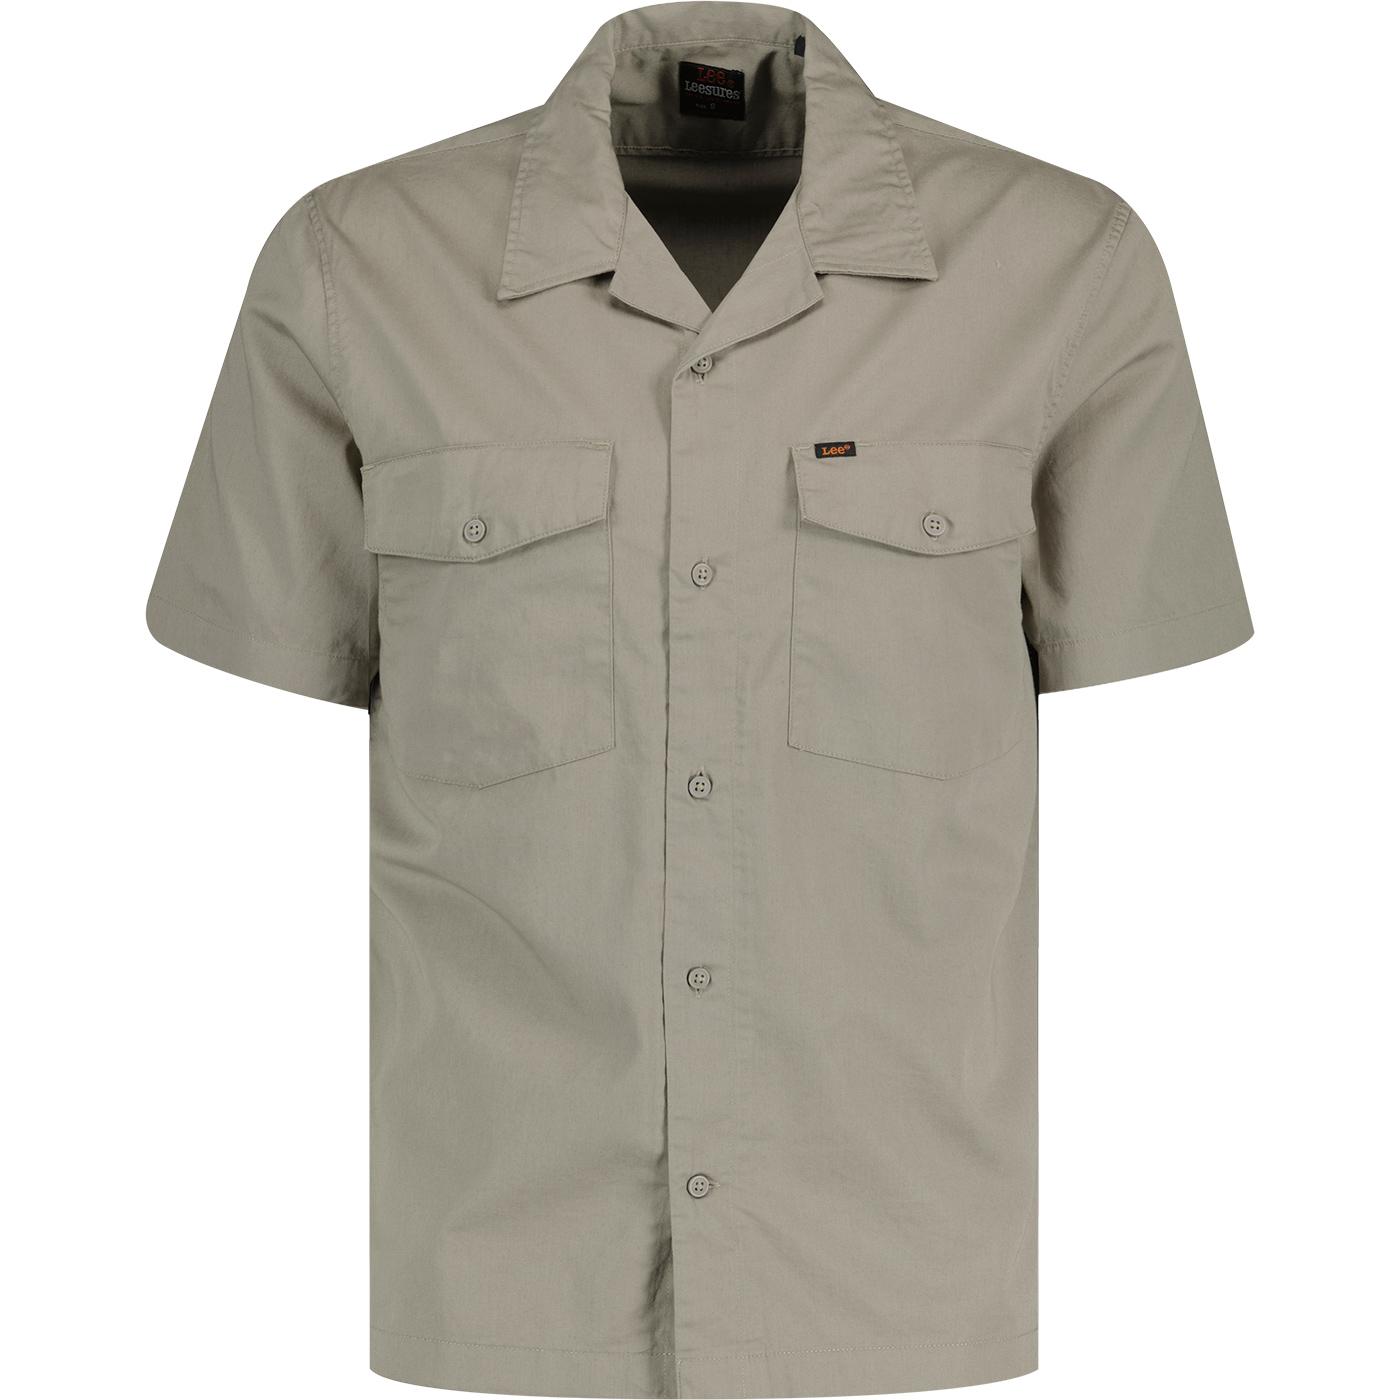 Chetopa Lee Retro Cotton Twill Shirt (Mushroom)